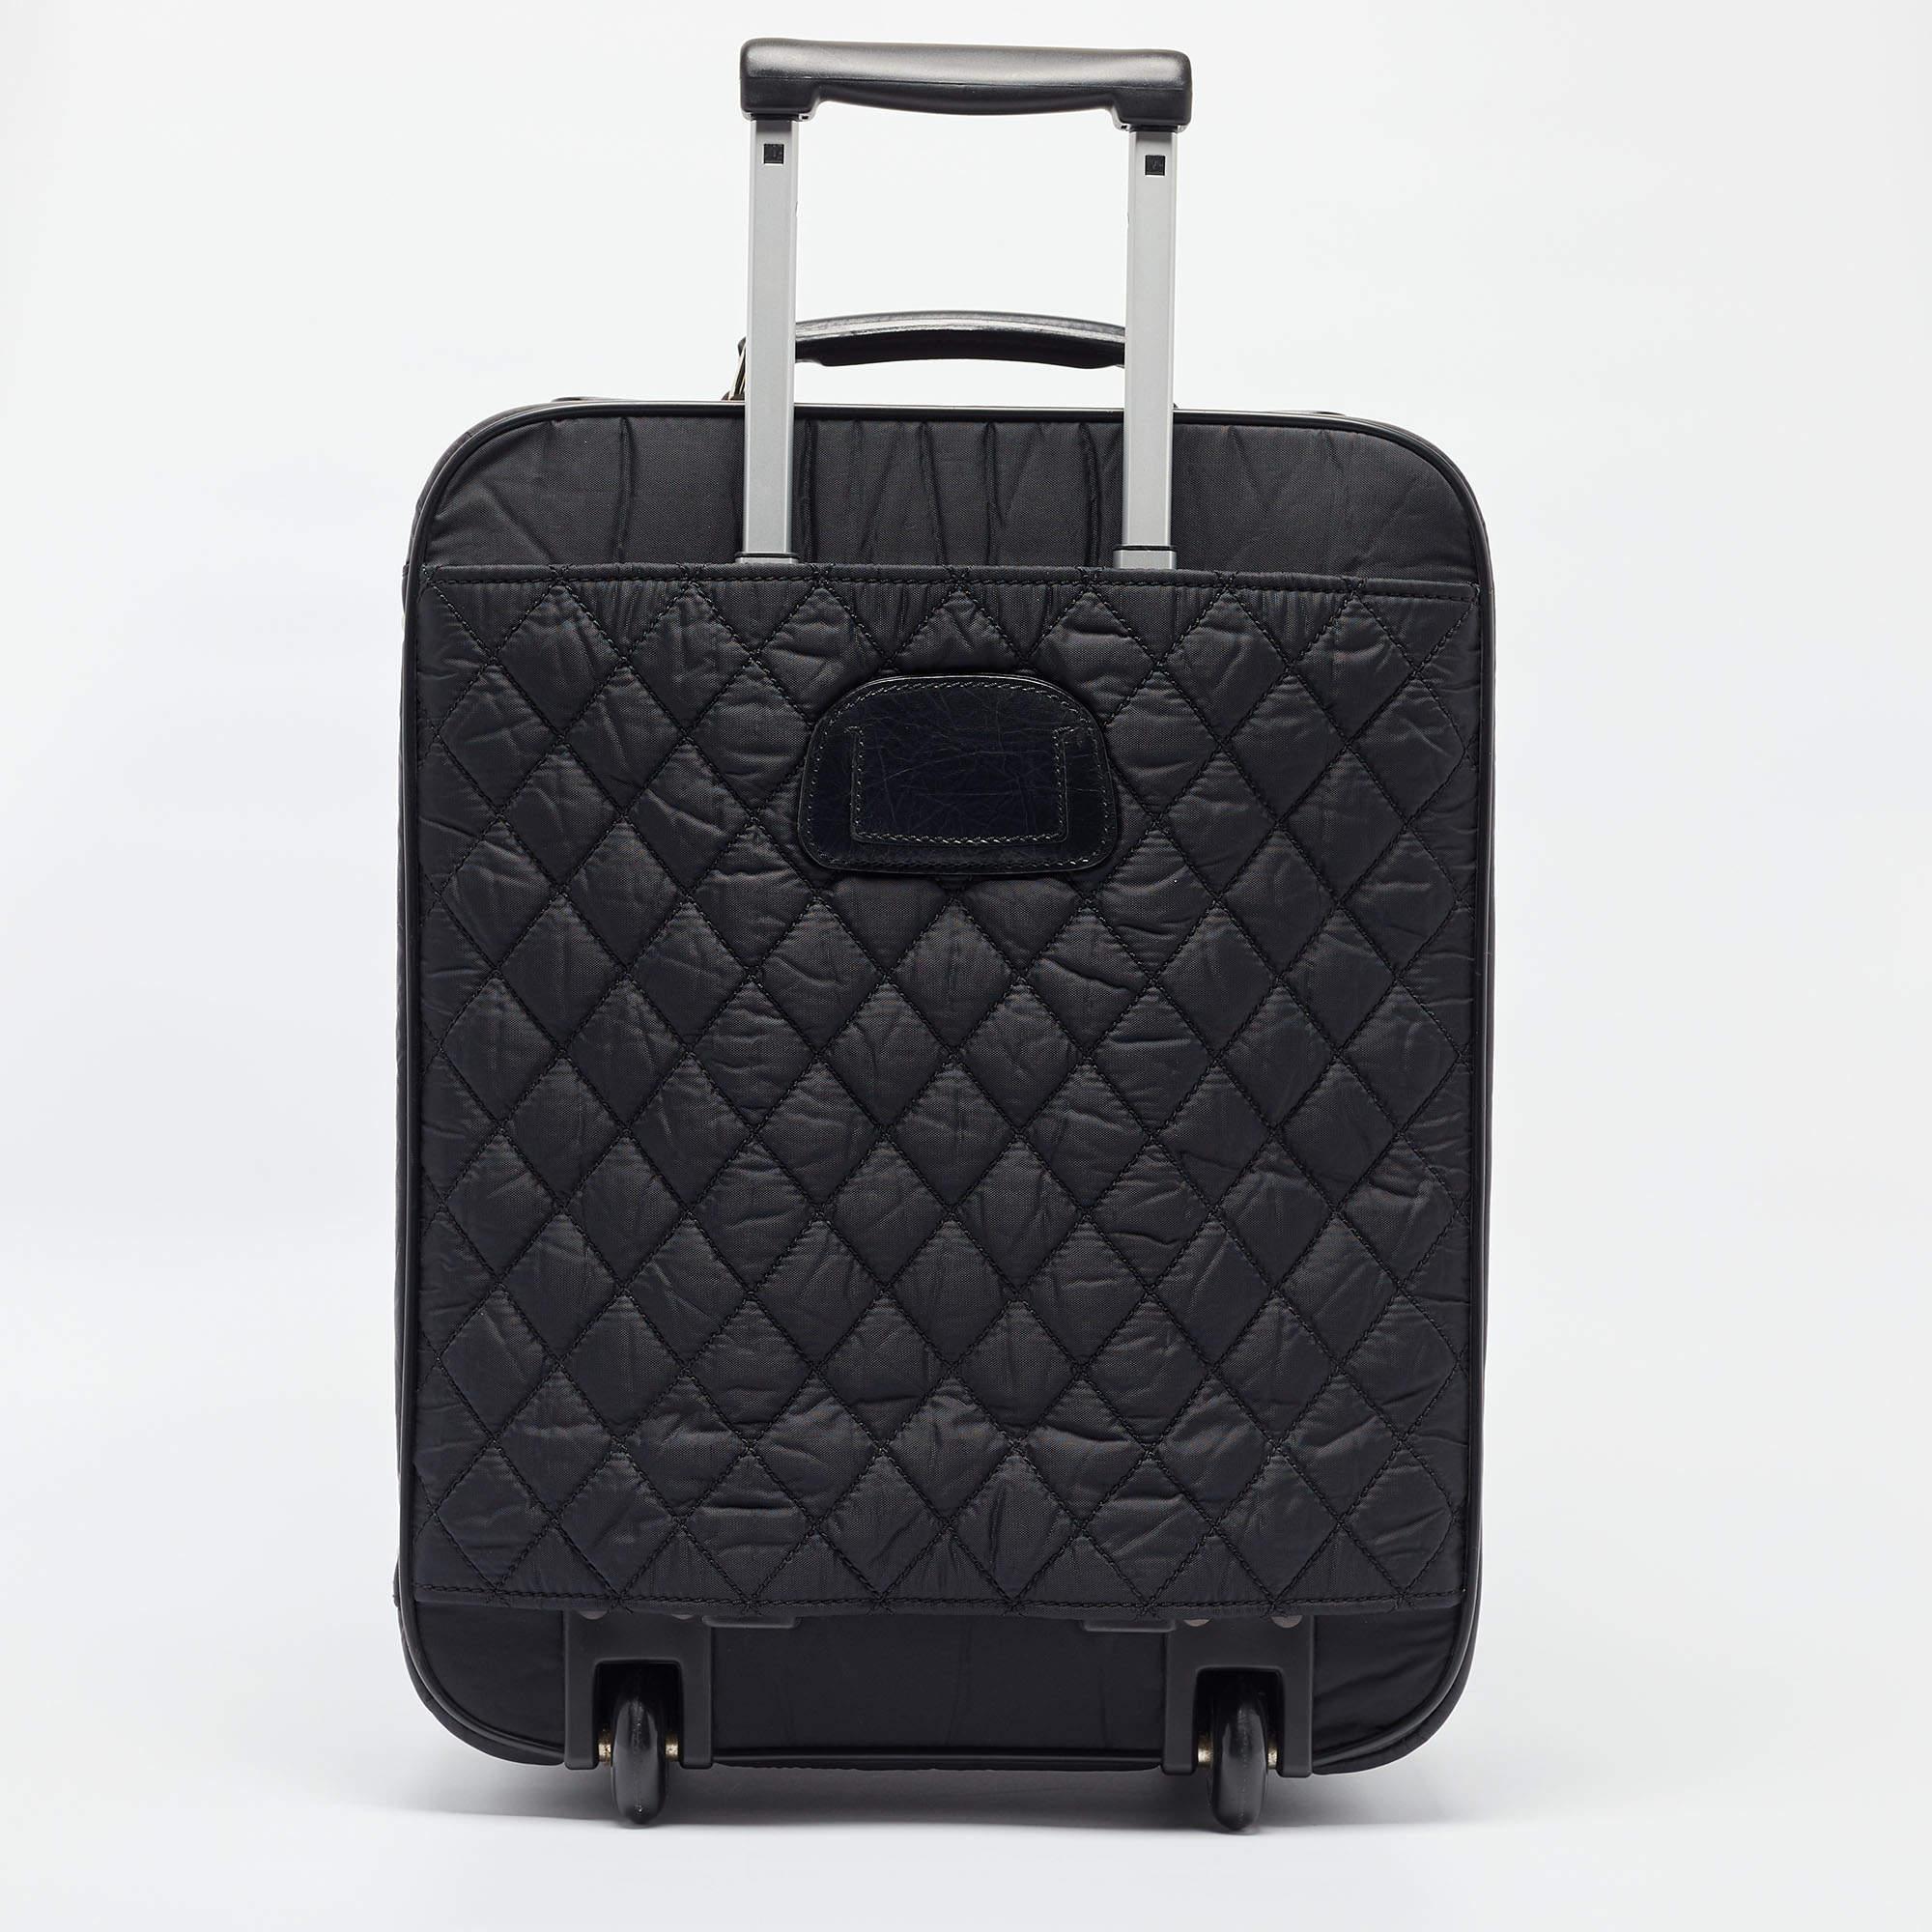 Voici les bagages Chanel CC, une fusion de luxe et de praticité. Confectionné en nylon matelassé résistant, il dégage un charme intemporel. Le logo CC emblématique ajoute une touche d'élégance. Équipé de deux roues à roulement souple, il promet des